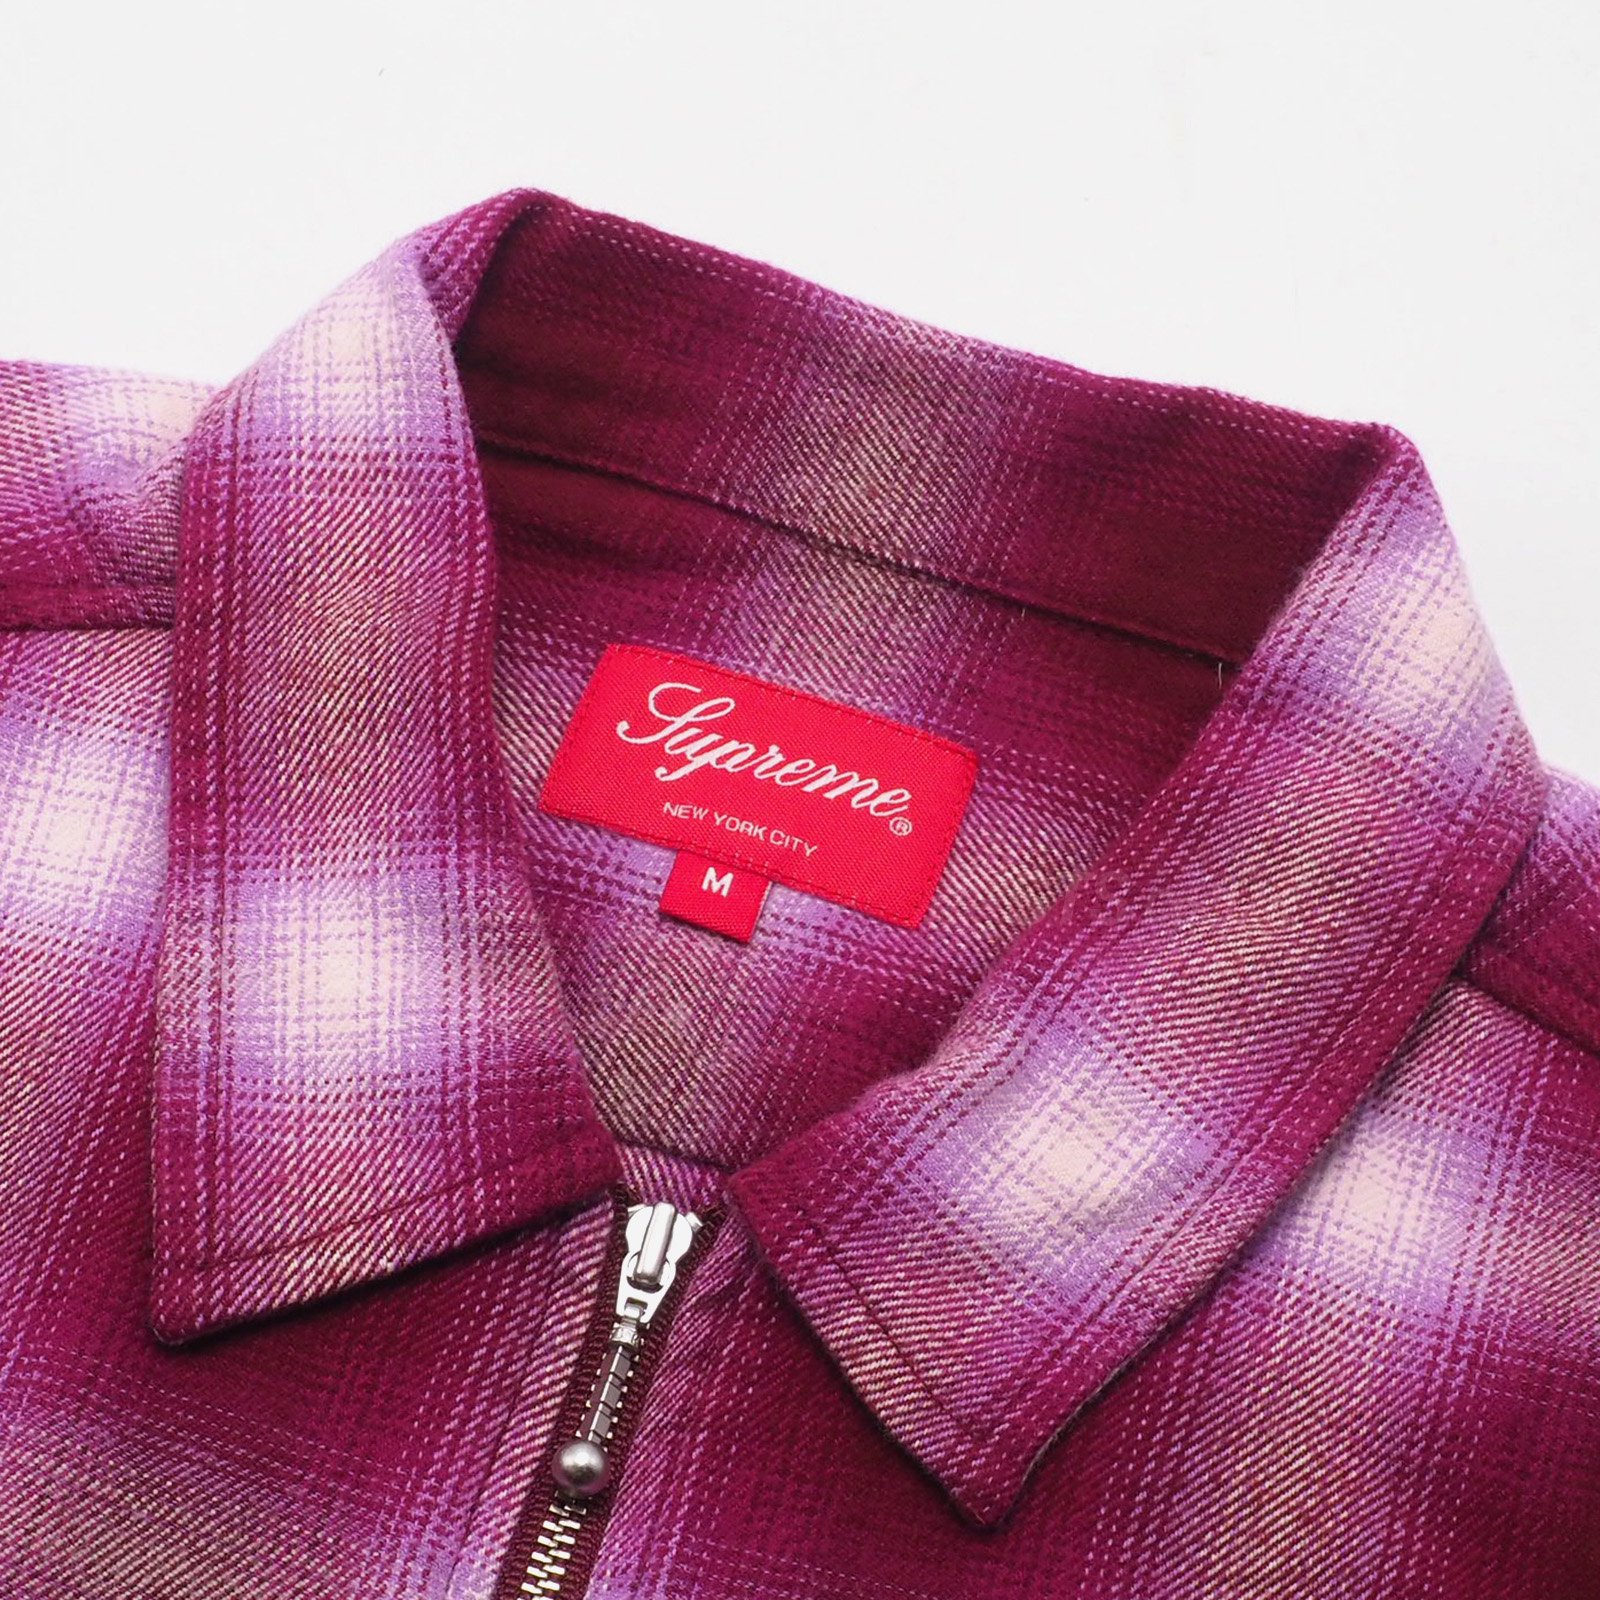 Supreme - Shadow Plaid Flannel Zip Up Shirt - UG.SHAFT